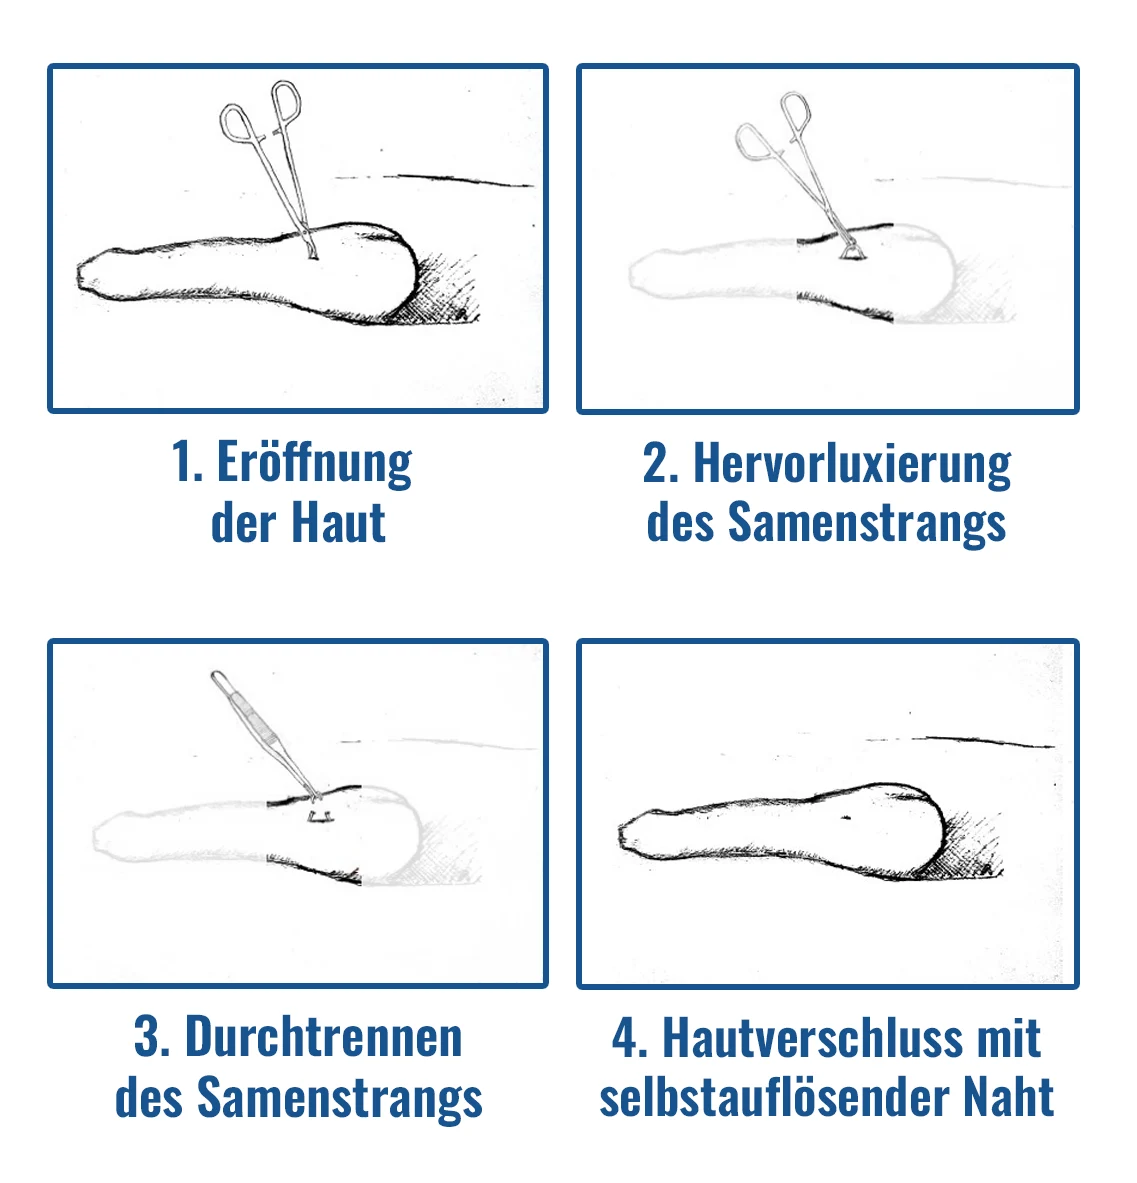 Ein grafisches Schaubild, dass in vier Stufen den Ablauf einer Vasketomie-Operation zeigt.